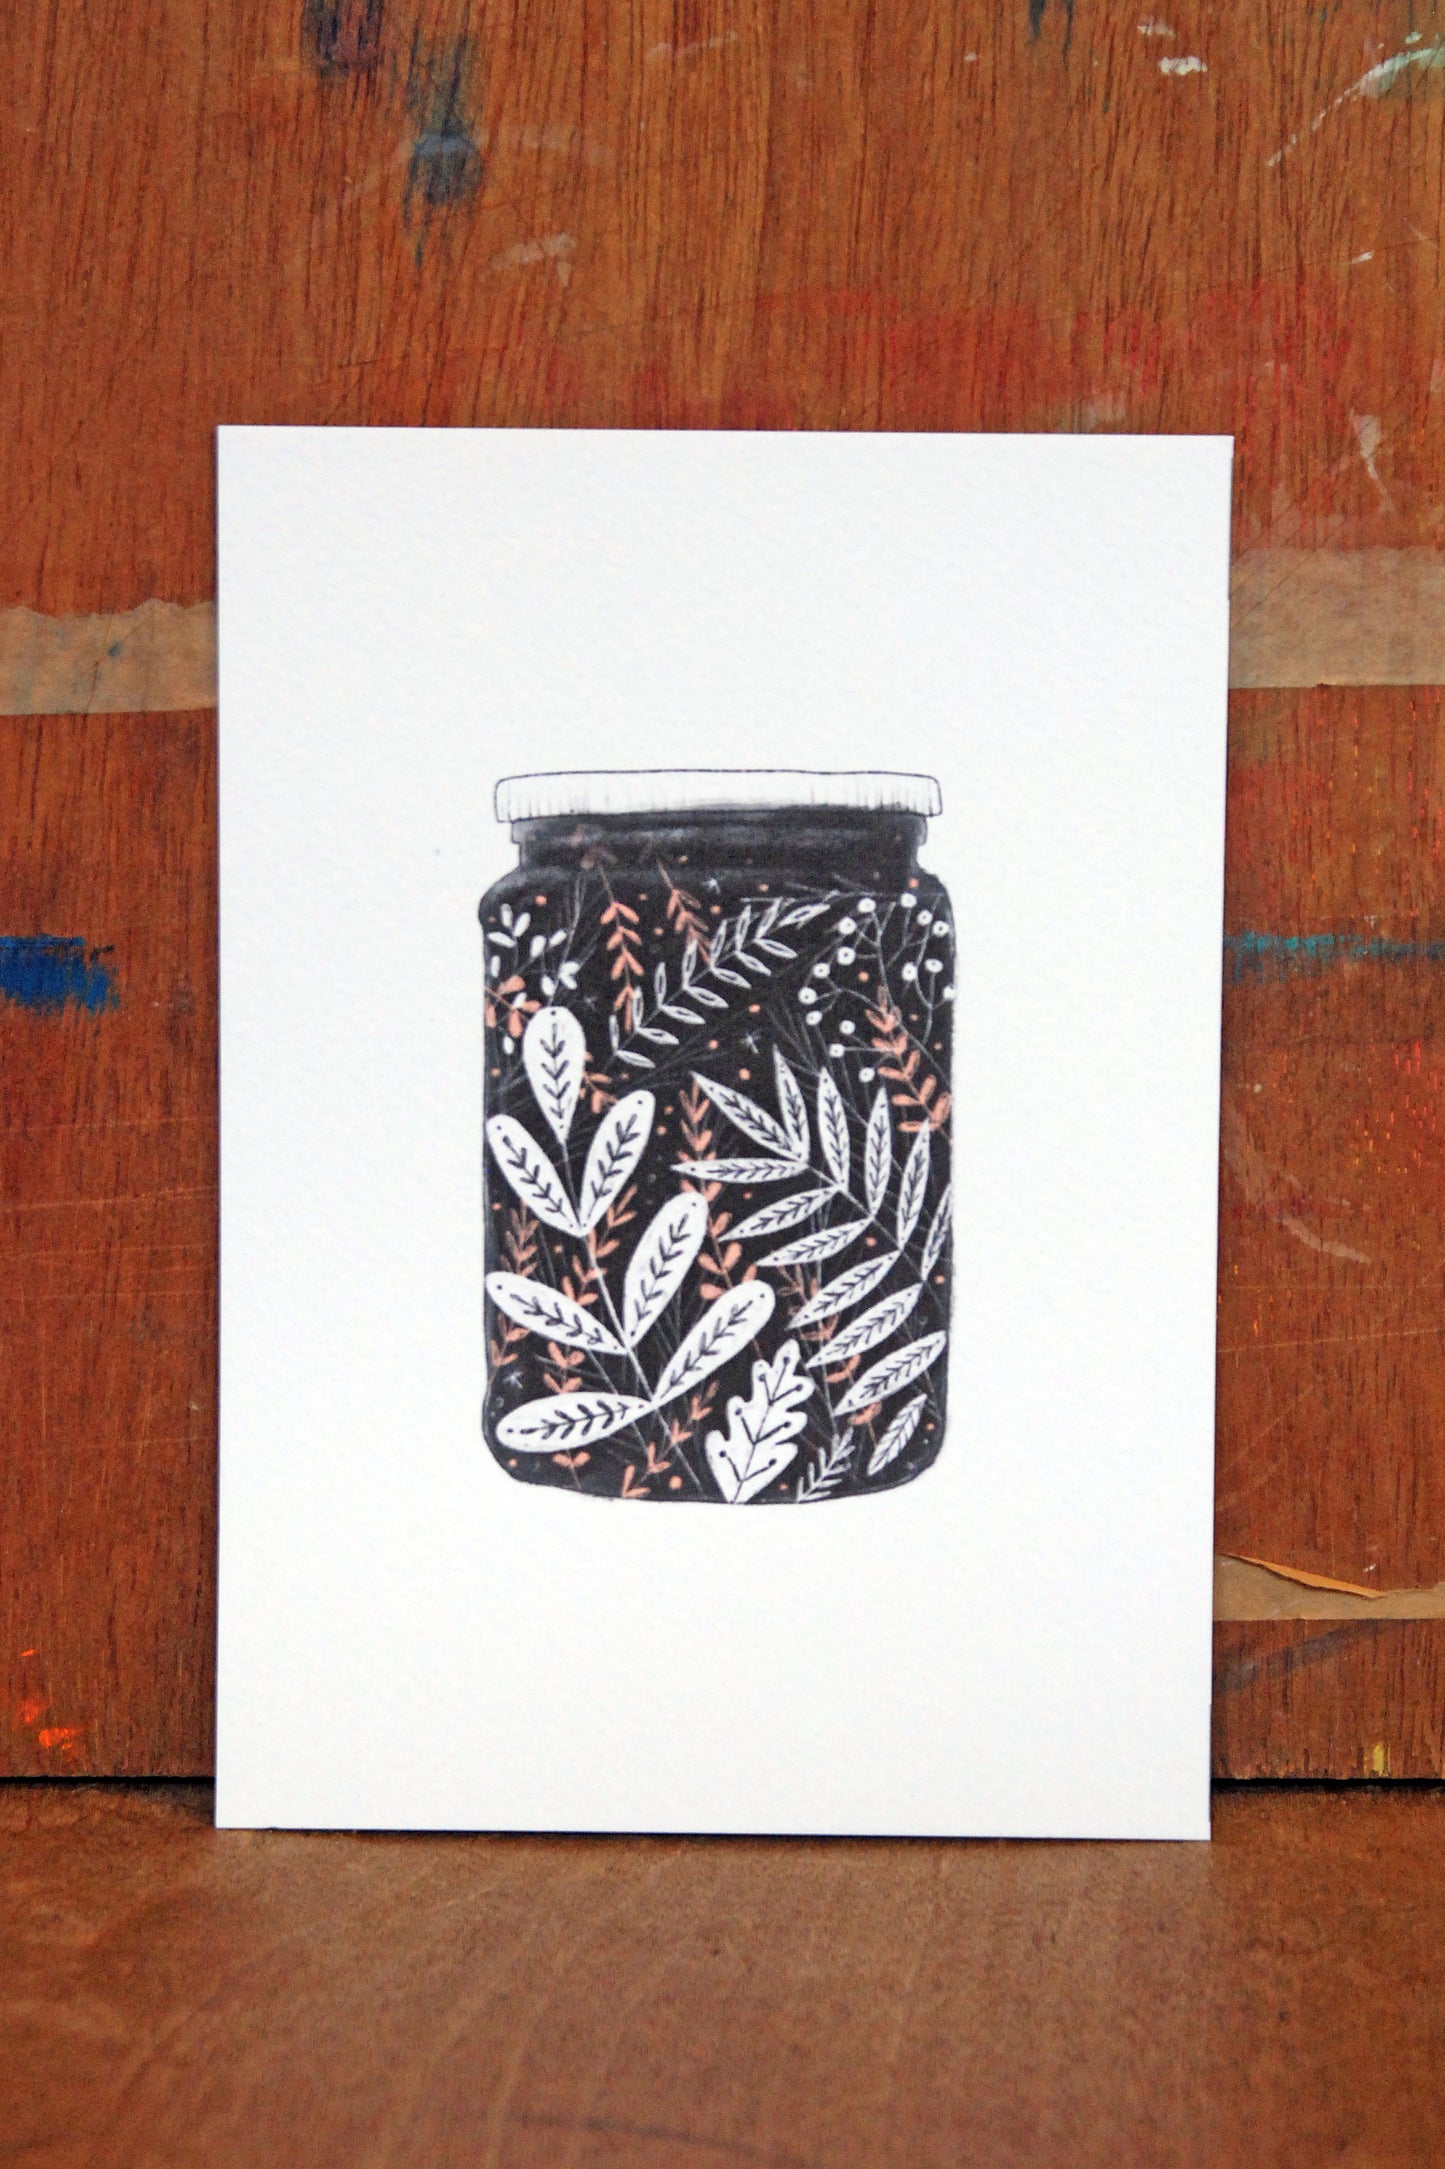 Floral Jam Jar Black and White Illustration